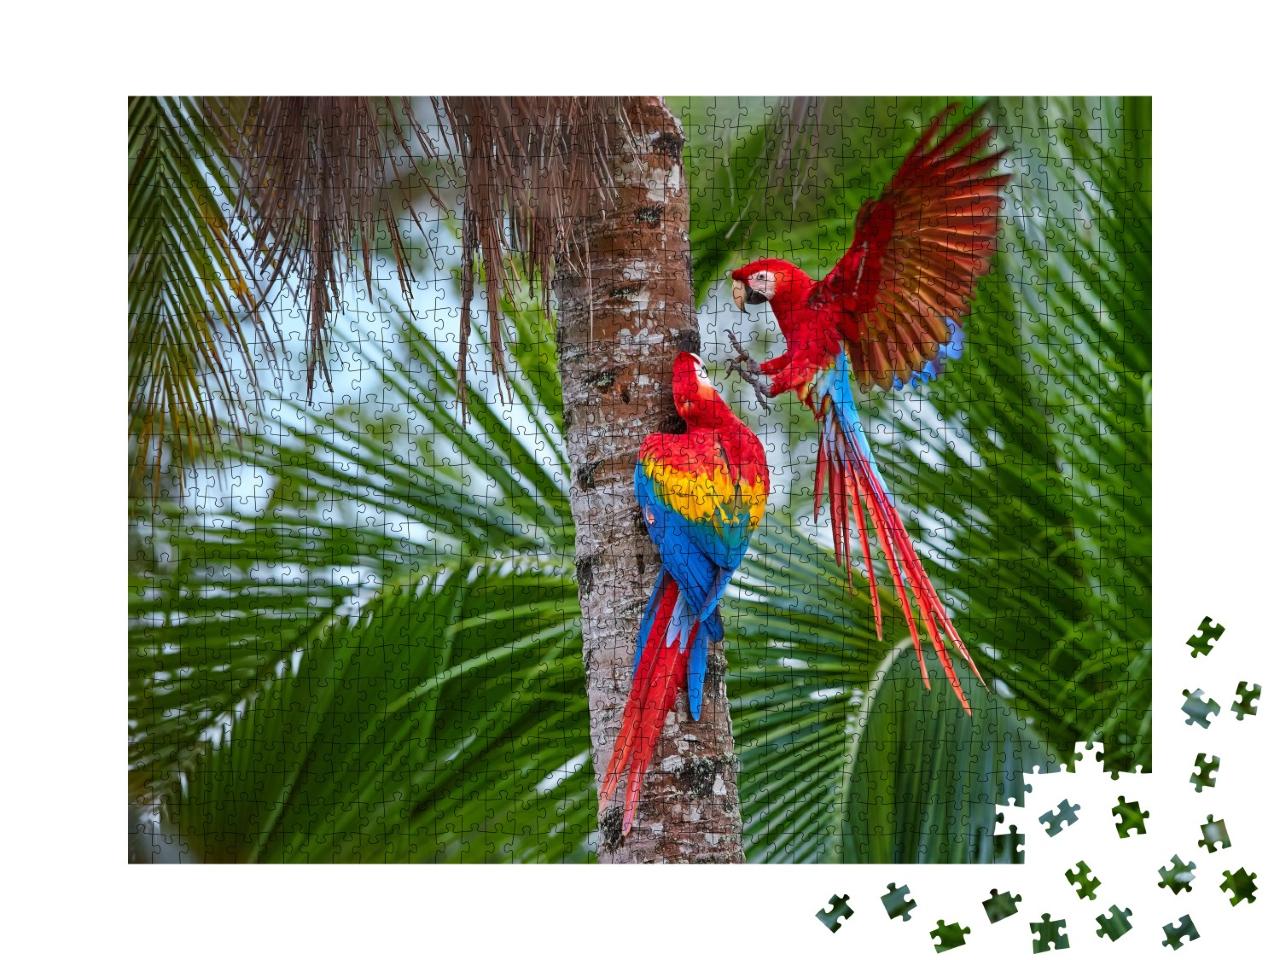 Puzzle de 1000 pièces « Perroquets d'Amazonie sur un palmier »